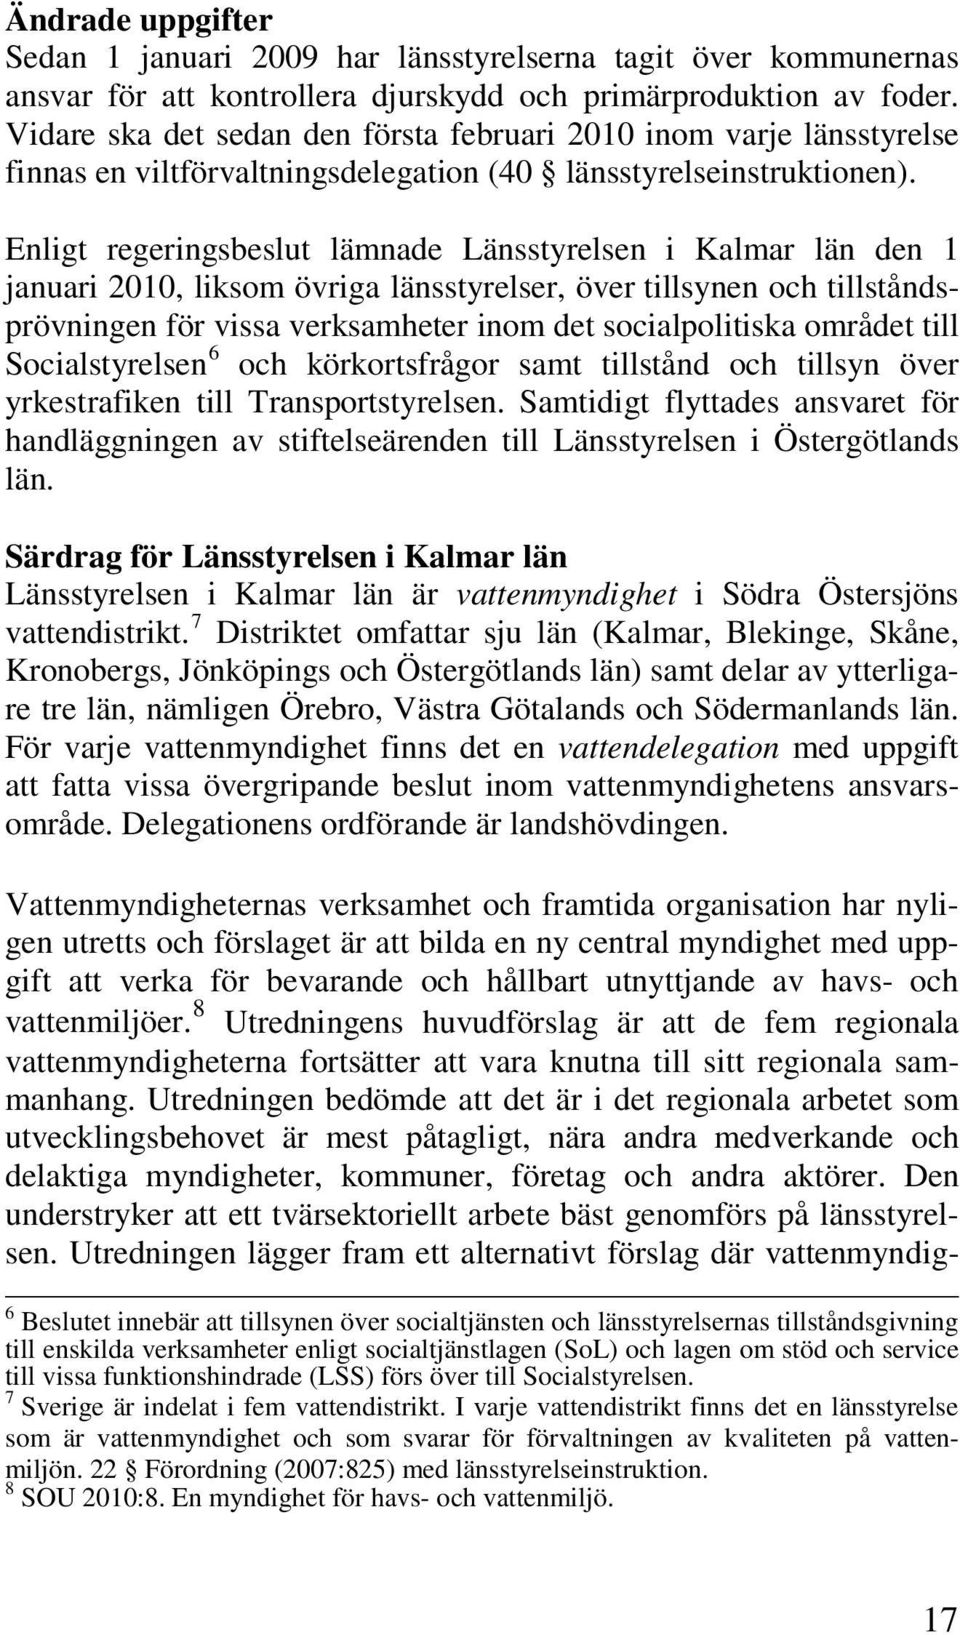 Enligt regeringsbeslut lämnade Länsstyrelsen i Kalmar län den 1 januari 2010, liksom övriga länsstyrelser, över tillsynen och tillståndsprövningen för vissa verksamheter inom det socialpolitiska